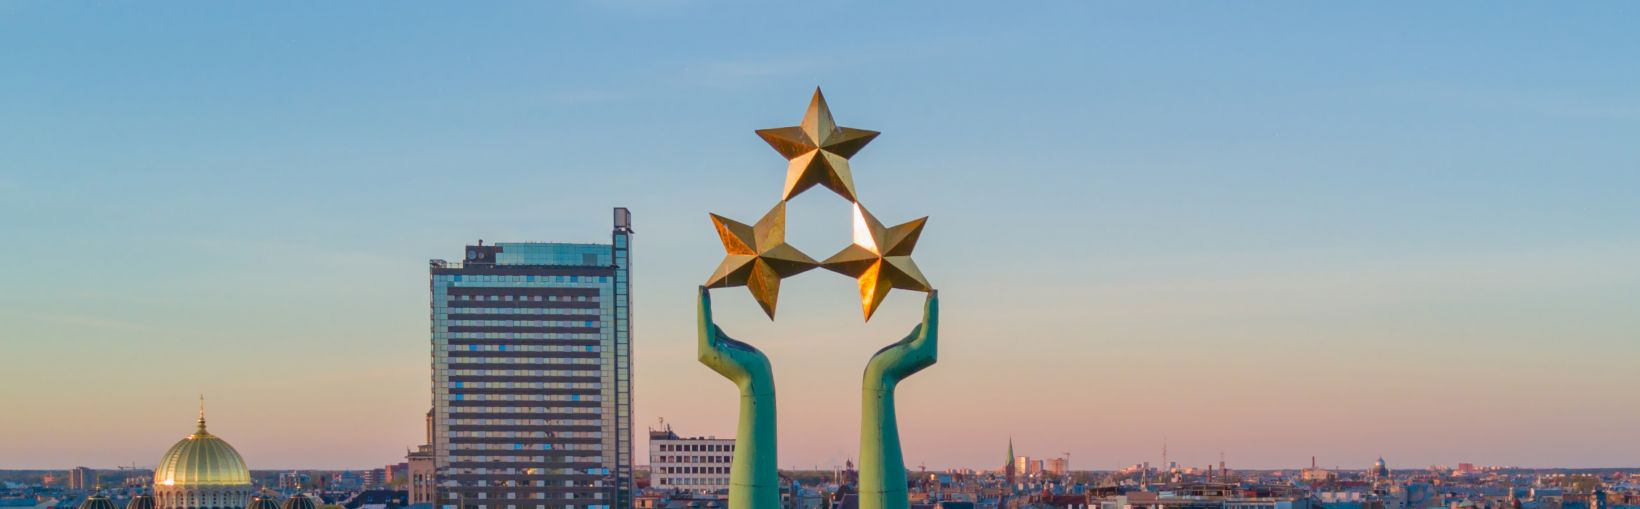 Vakker solnedgangsutsikt i Riga ved frihetsstatuen – Milda. Frihet i Latvia. Frihetsstatuen som holder tre stjerner over byen.